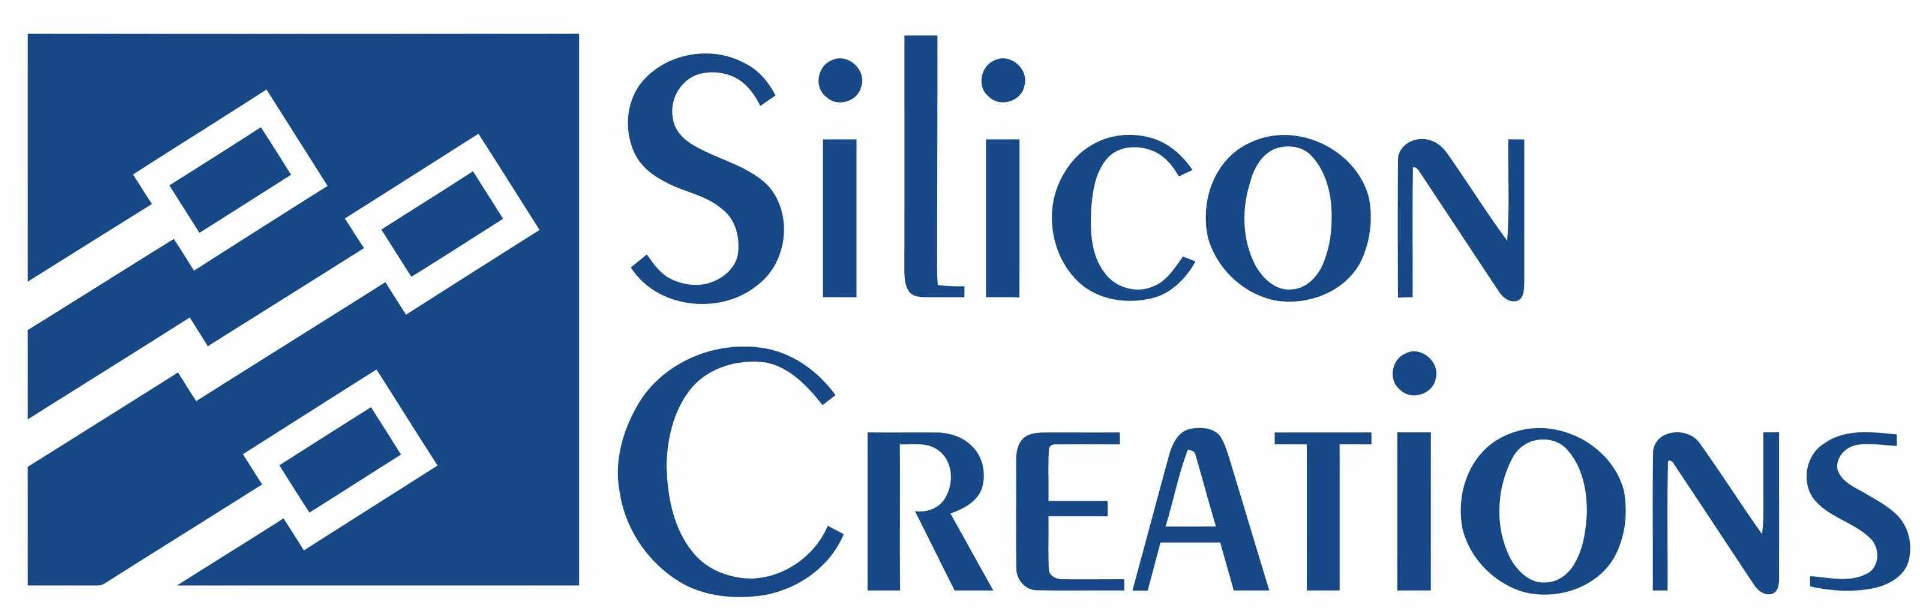 Silicon Creations logo